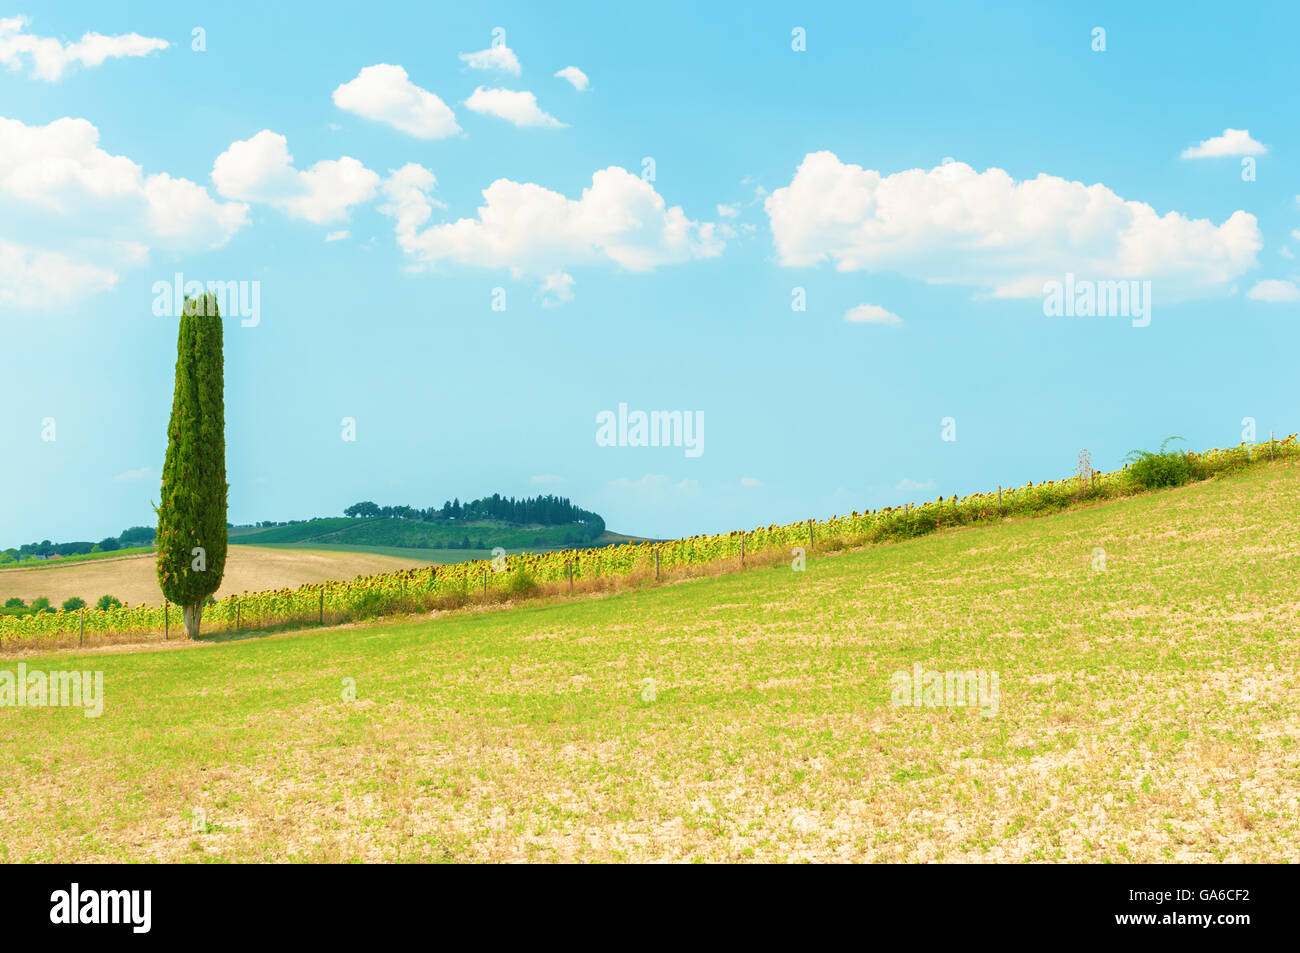 Cypress tree on the hillside, Tuscany italy. Stock Photo